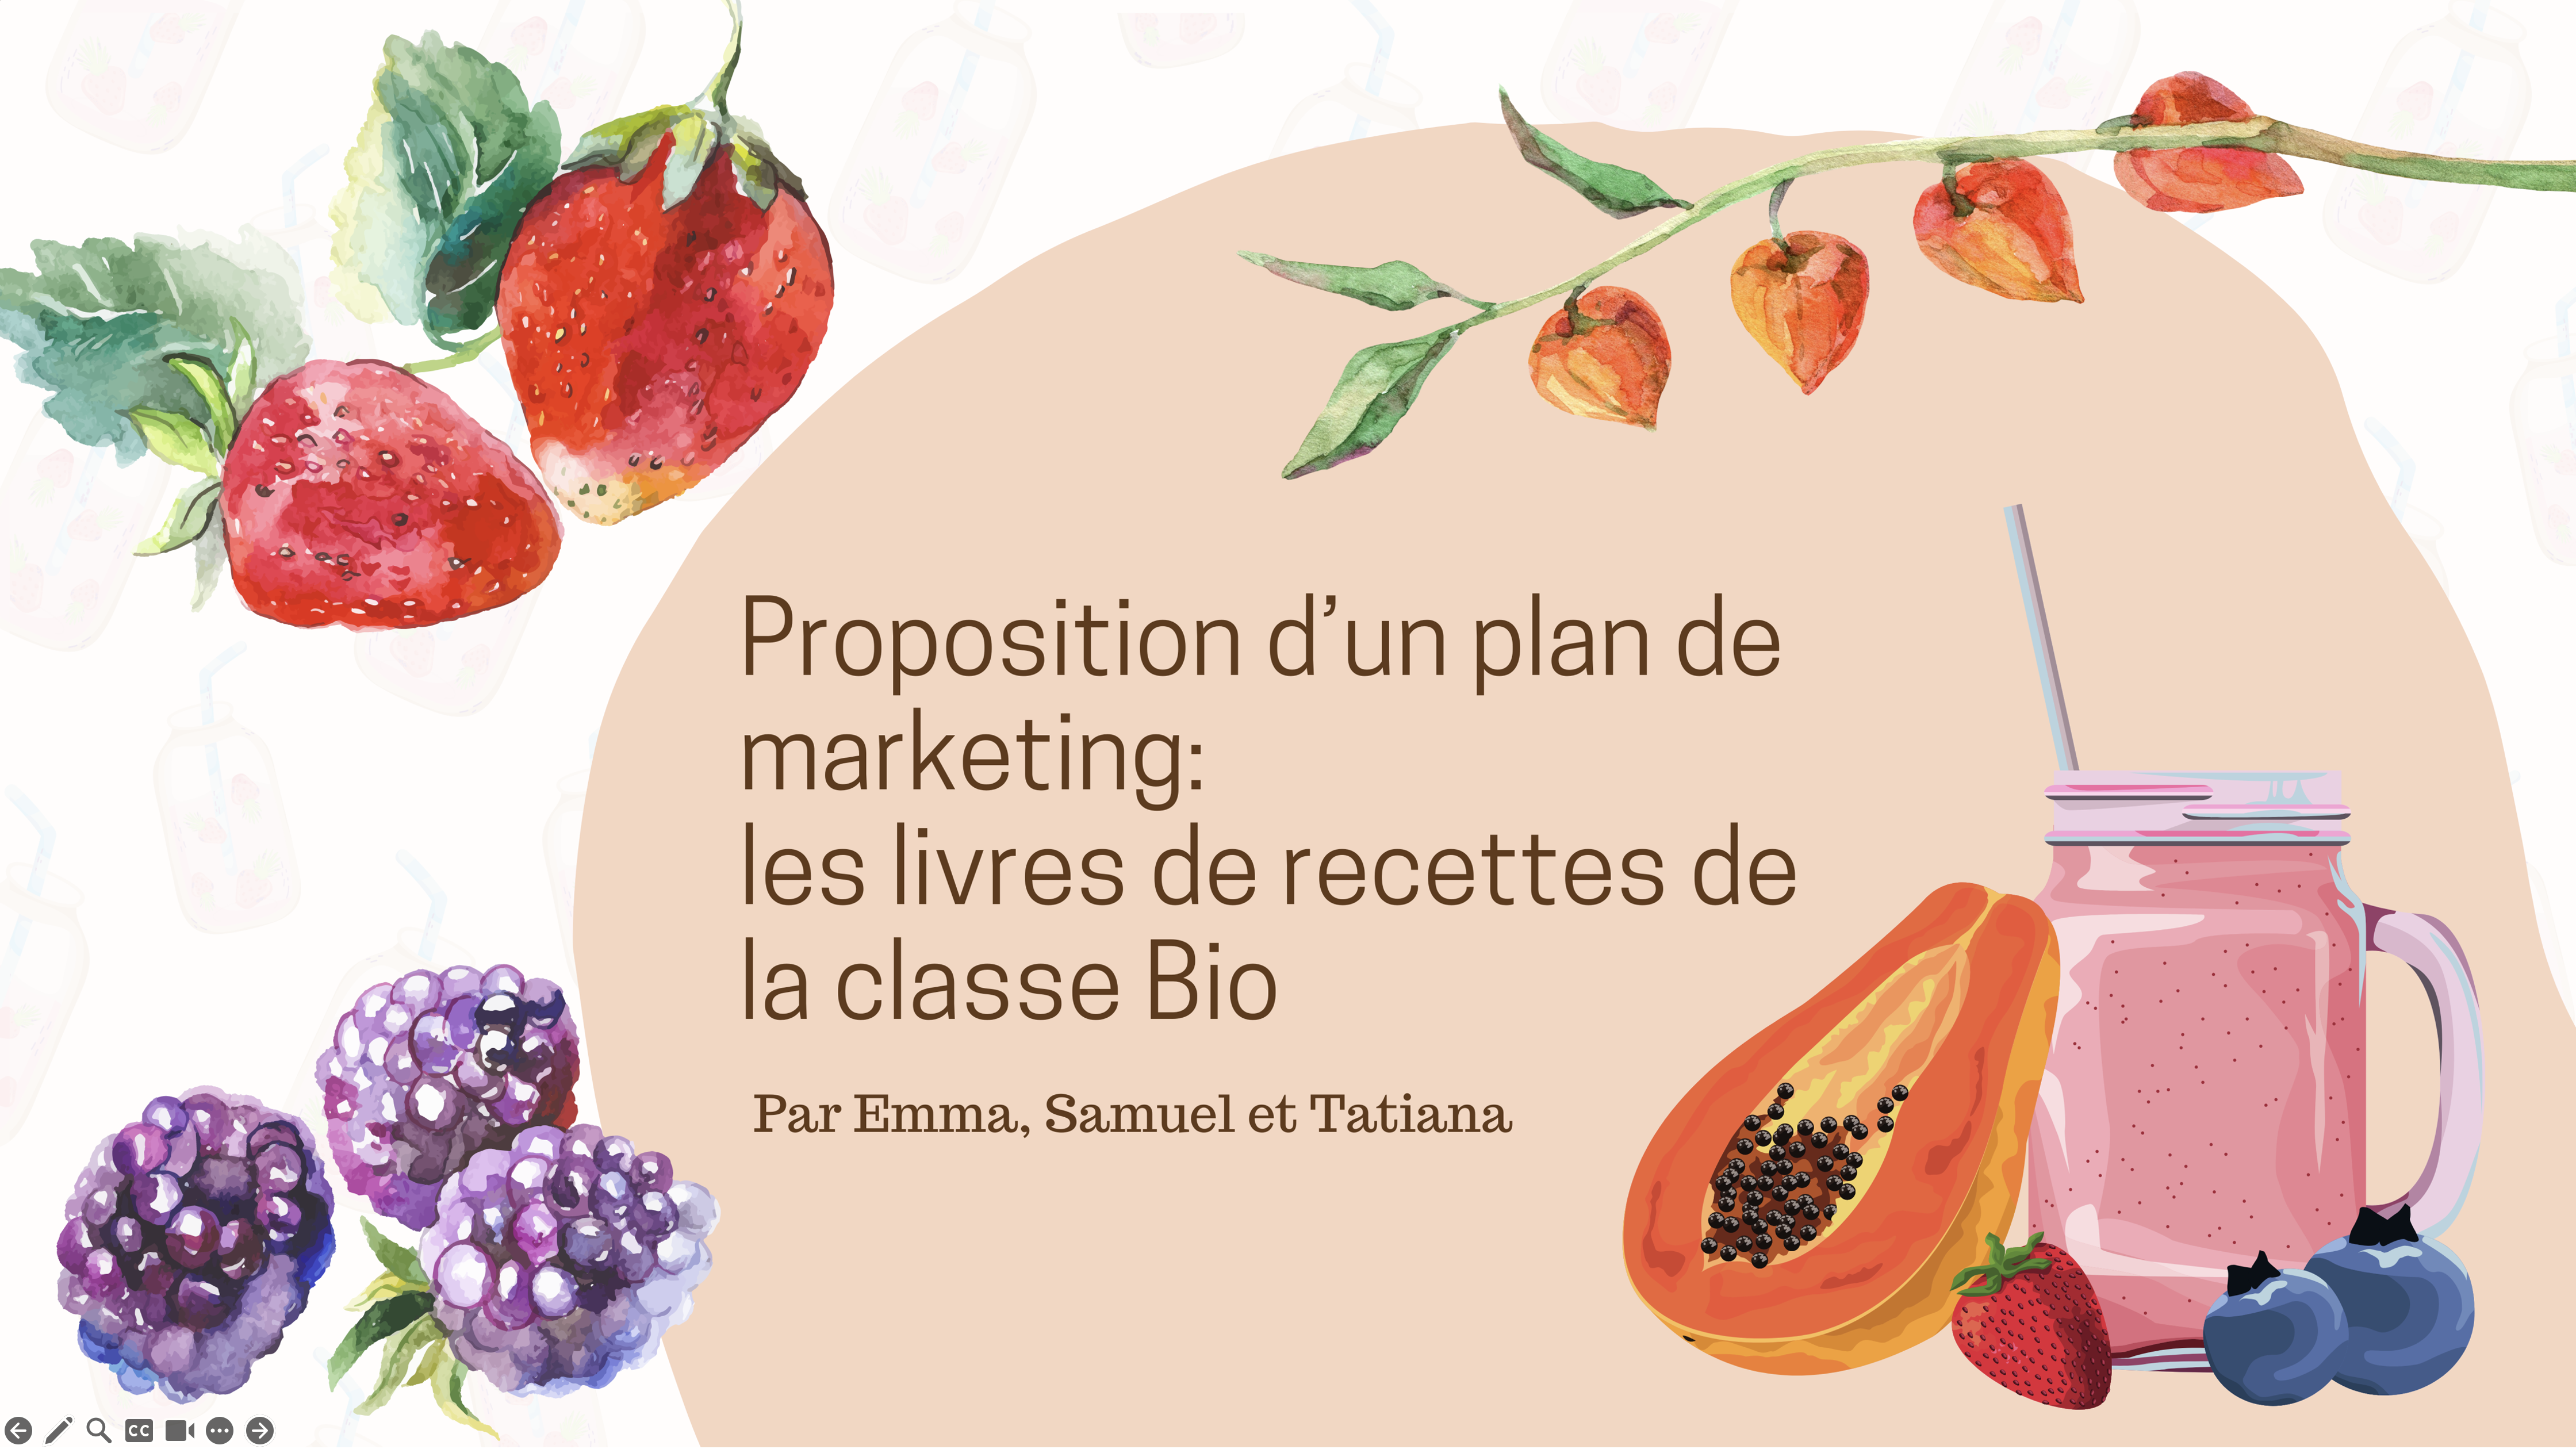 Proposition d’un plan de marketing: Les livres de recettes de la classe Bio